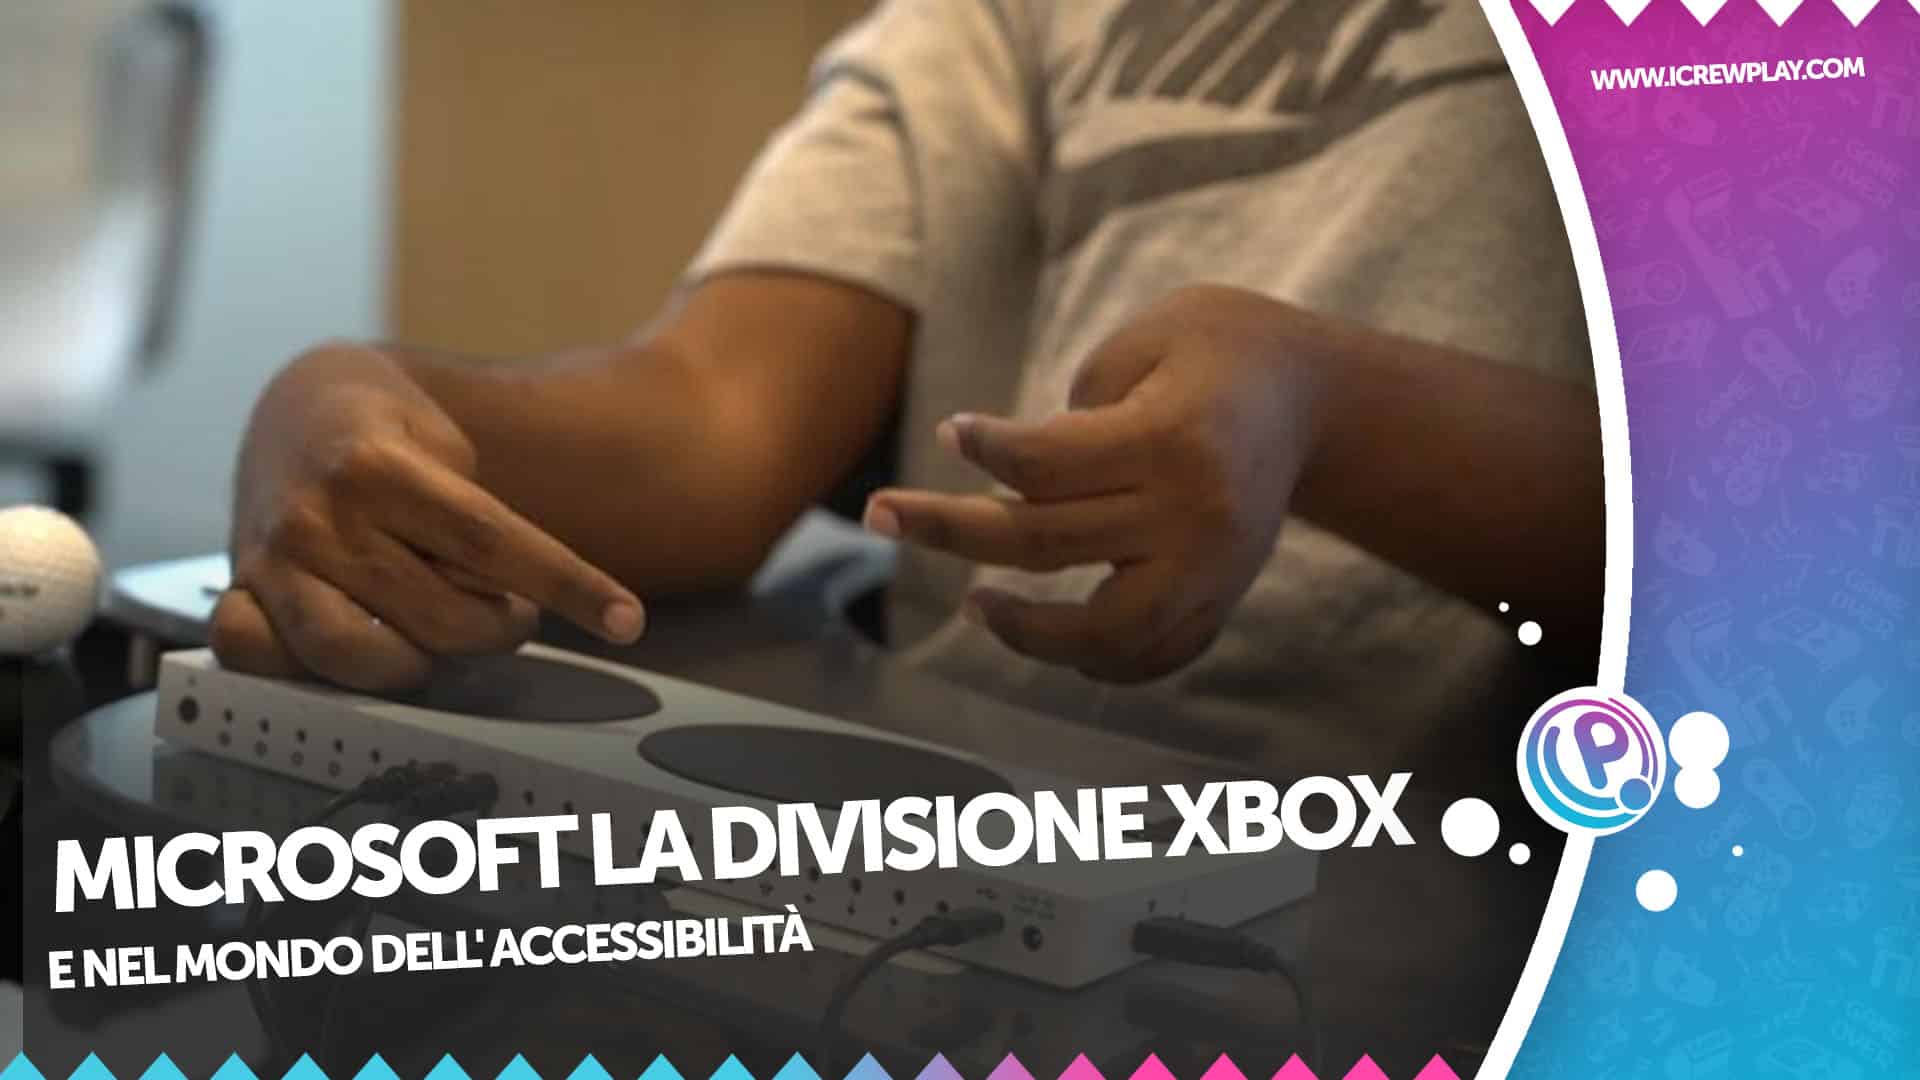 Microsoft: la divisione XBOX nel mondo dell'accessibilità 4